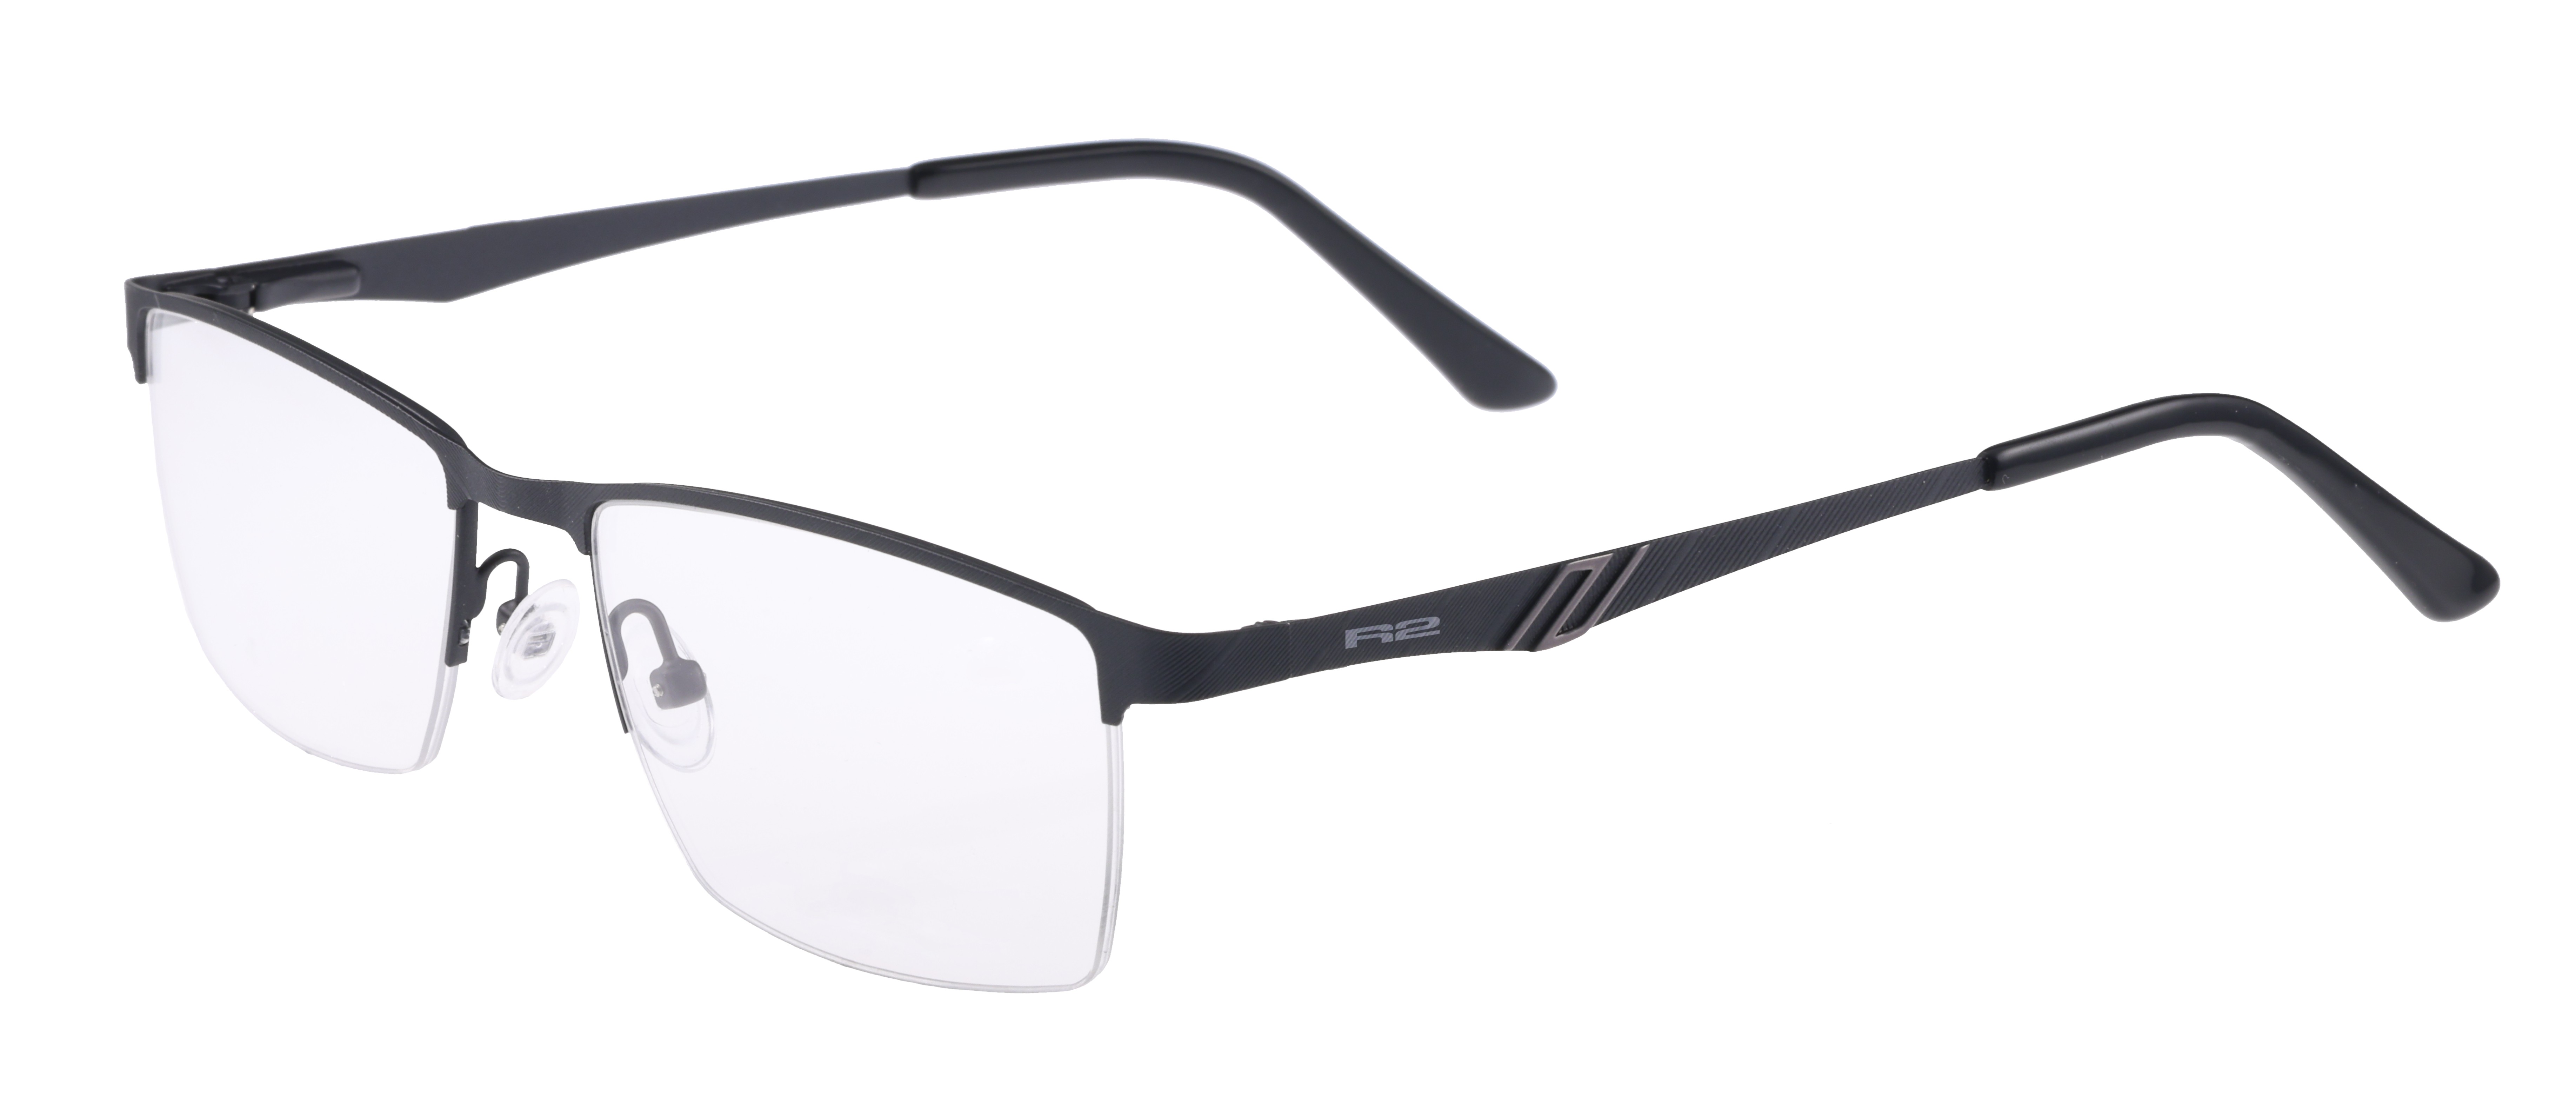 Sportovní dioptrické brýle R2  TALIC MAT113C3 - standard